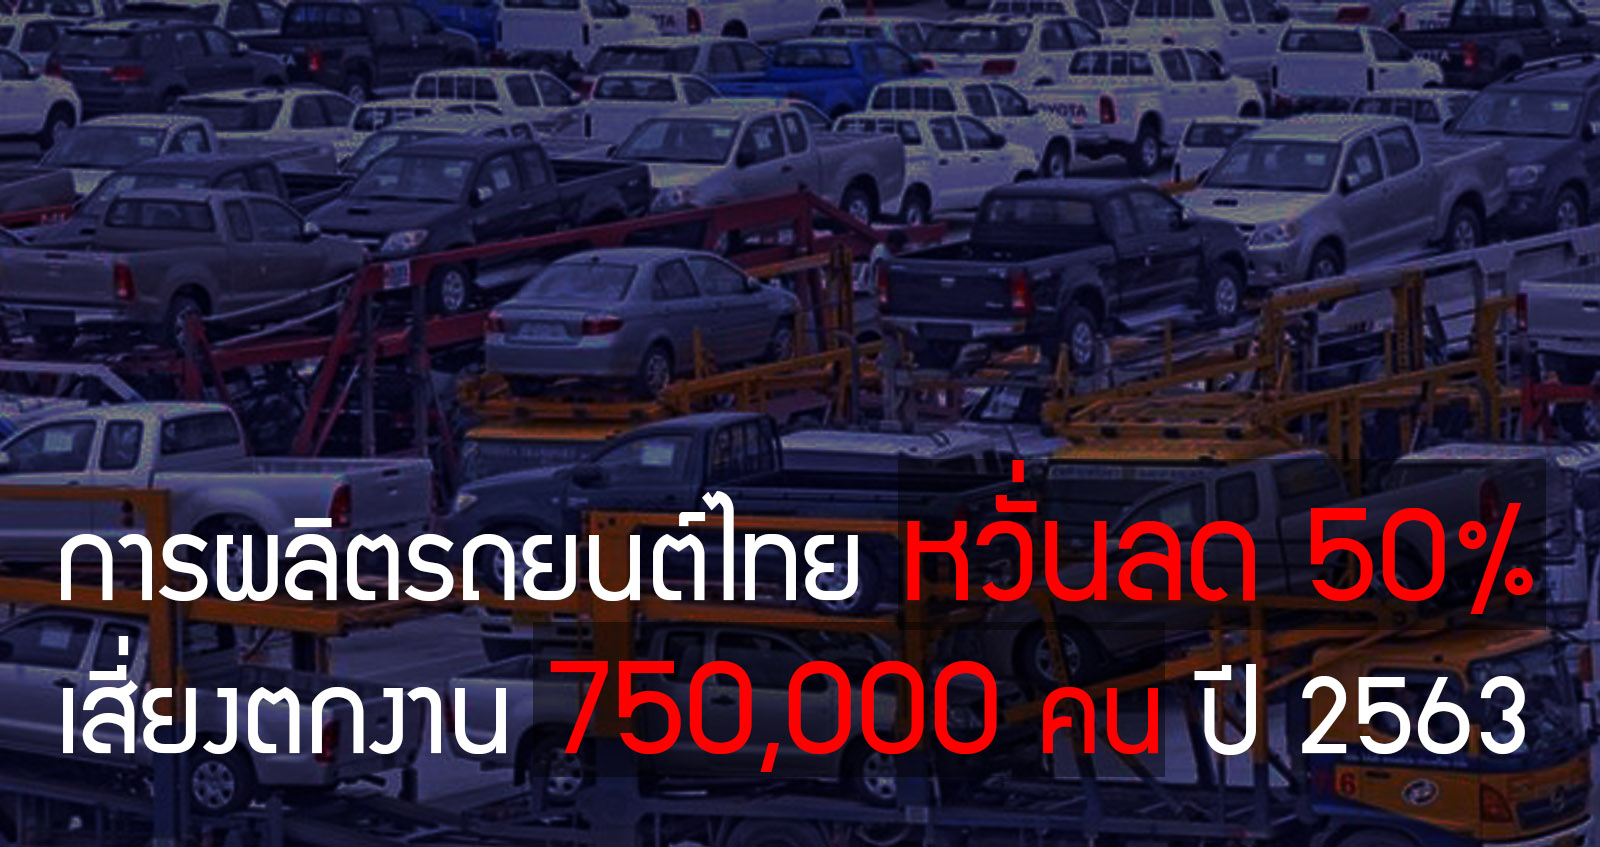 การผลิตรถยนต์ในไทยปี 63 หวั่นลดลง 50% เสี่ยงตกงาน 750,000 คน เม็ดเงินหาย 1 ล้านล้านบาท